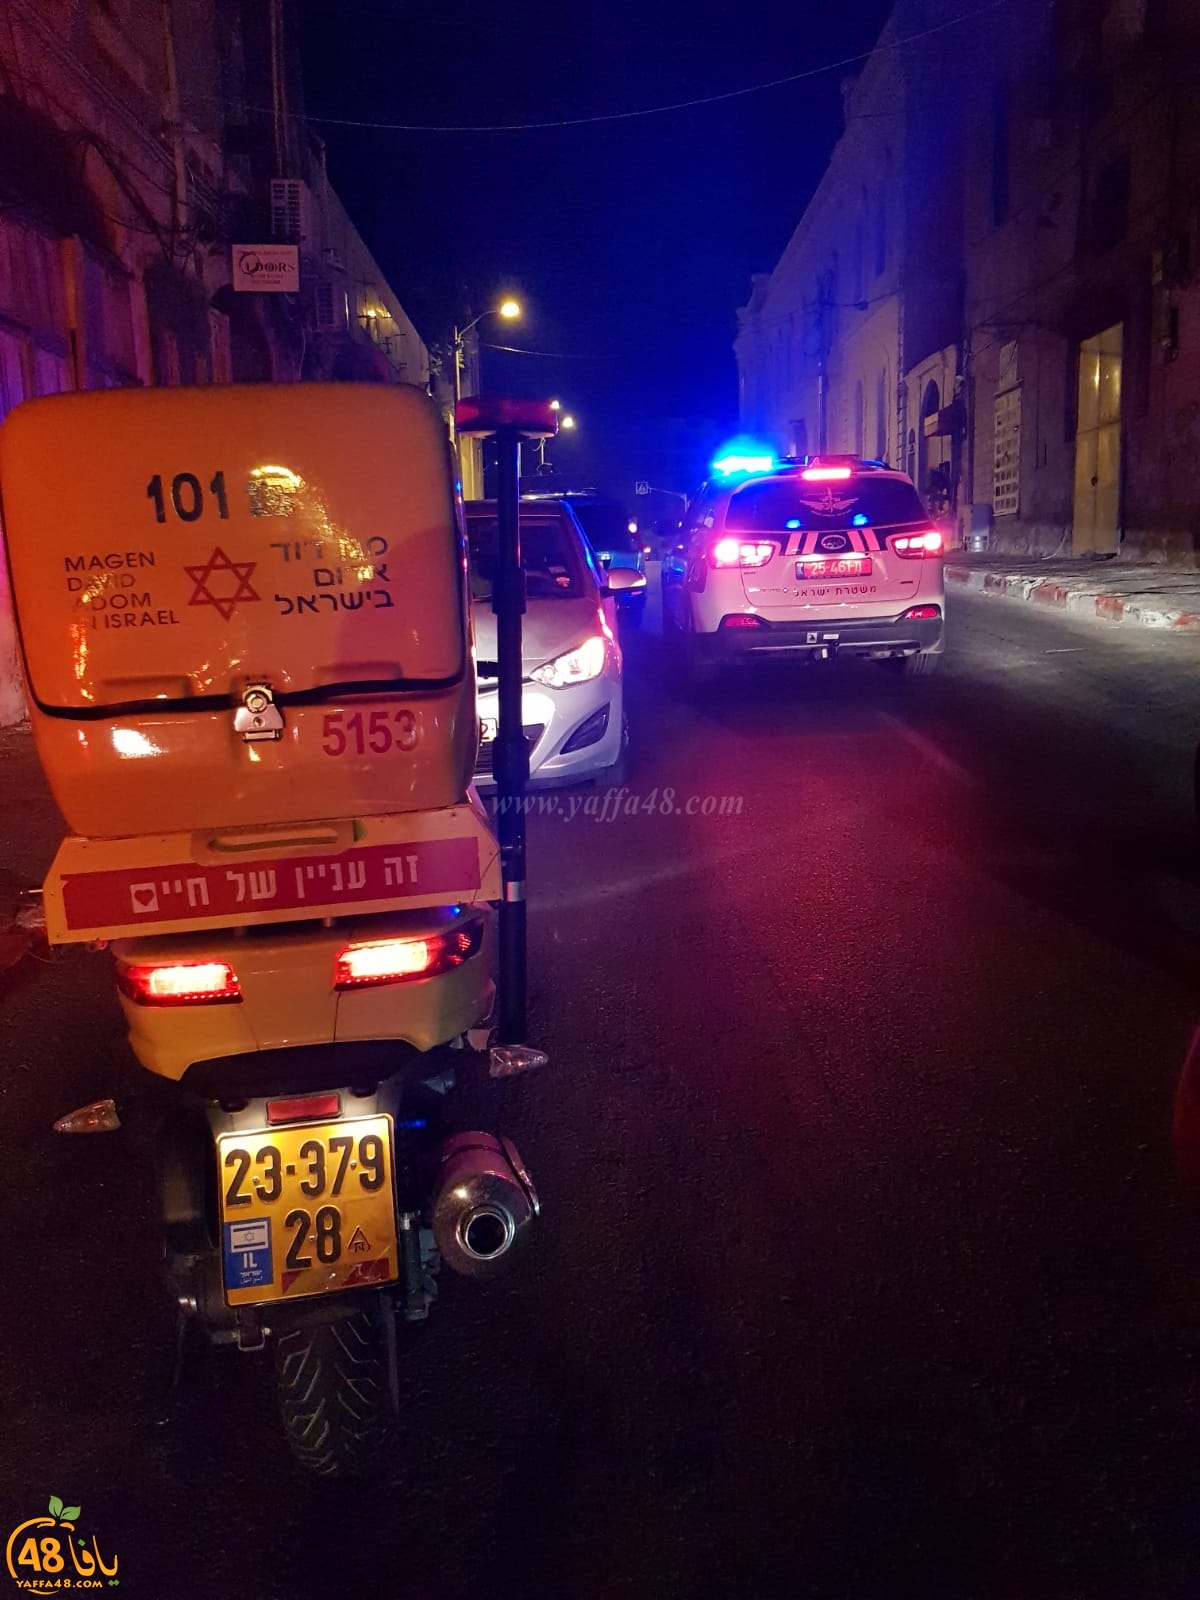  يافا - الشرطة: القاء قنبلة صوتية في شارع ييفت دون وقوع اصابات 